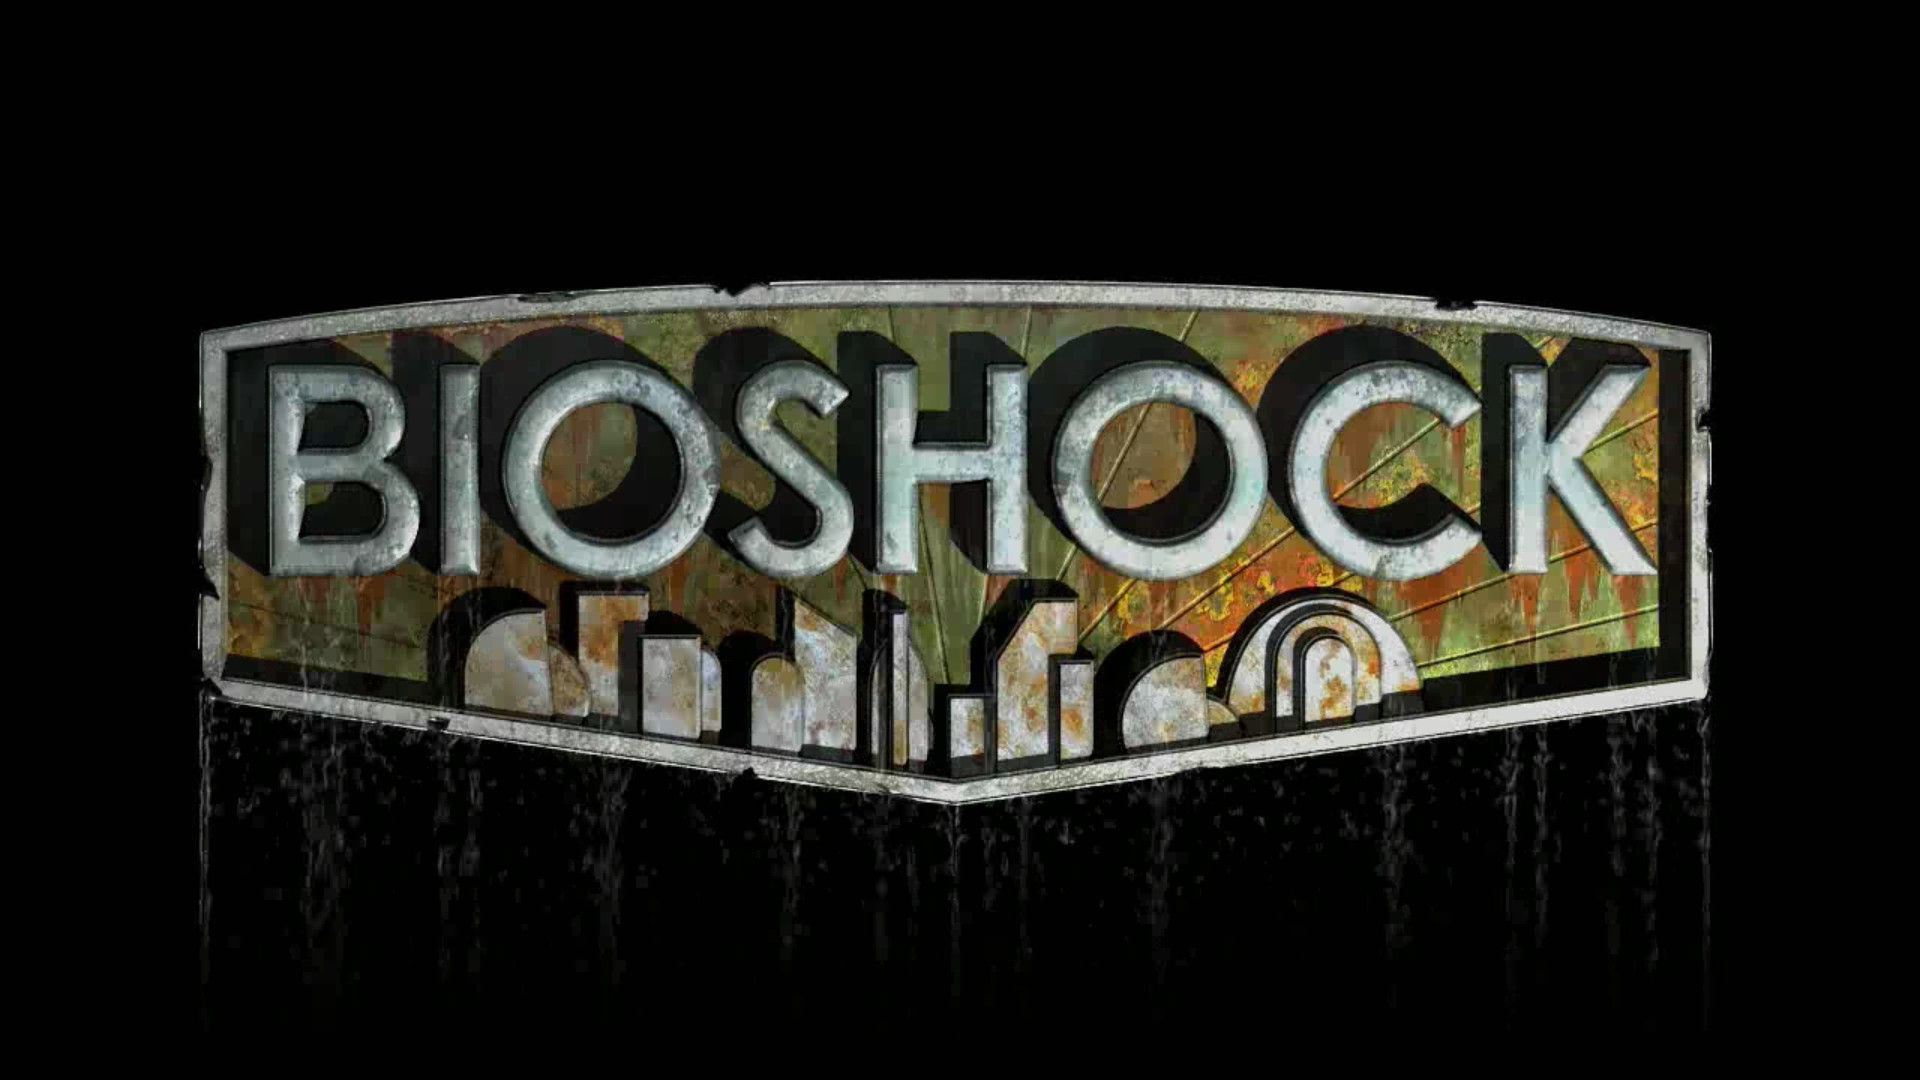 BioShock 4, ecco i primi dettagli